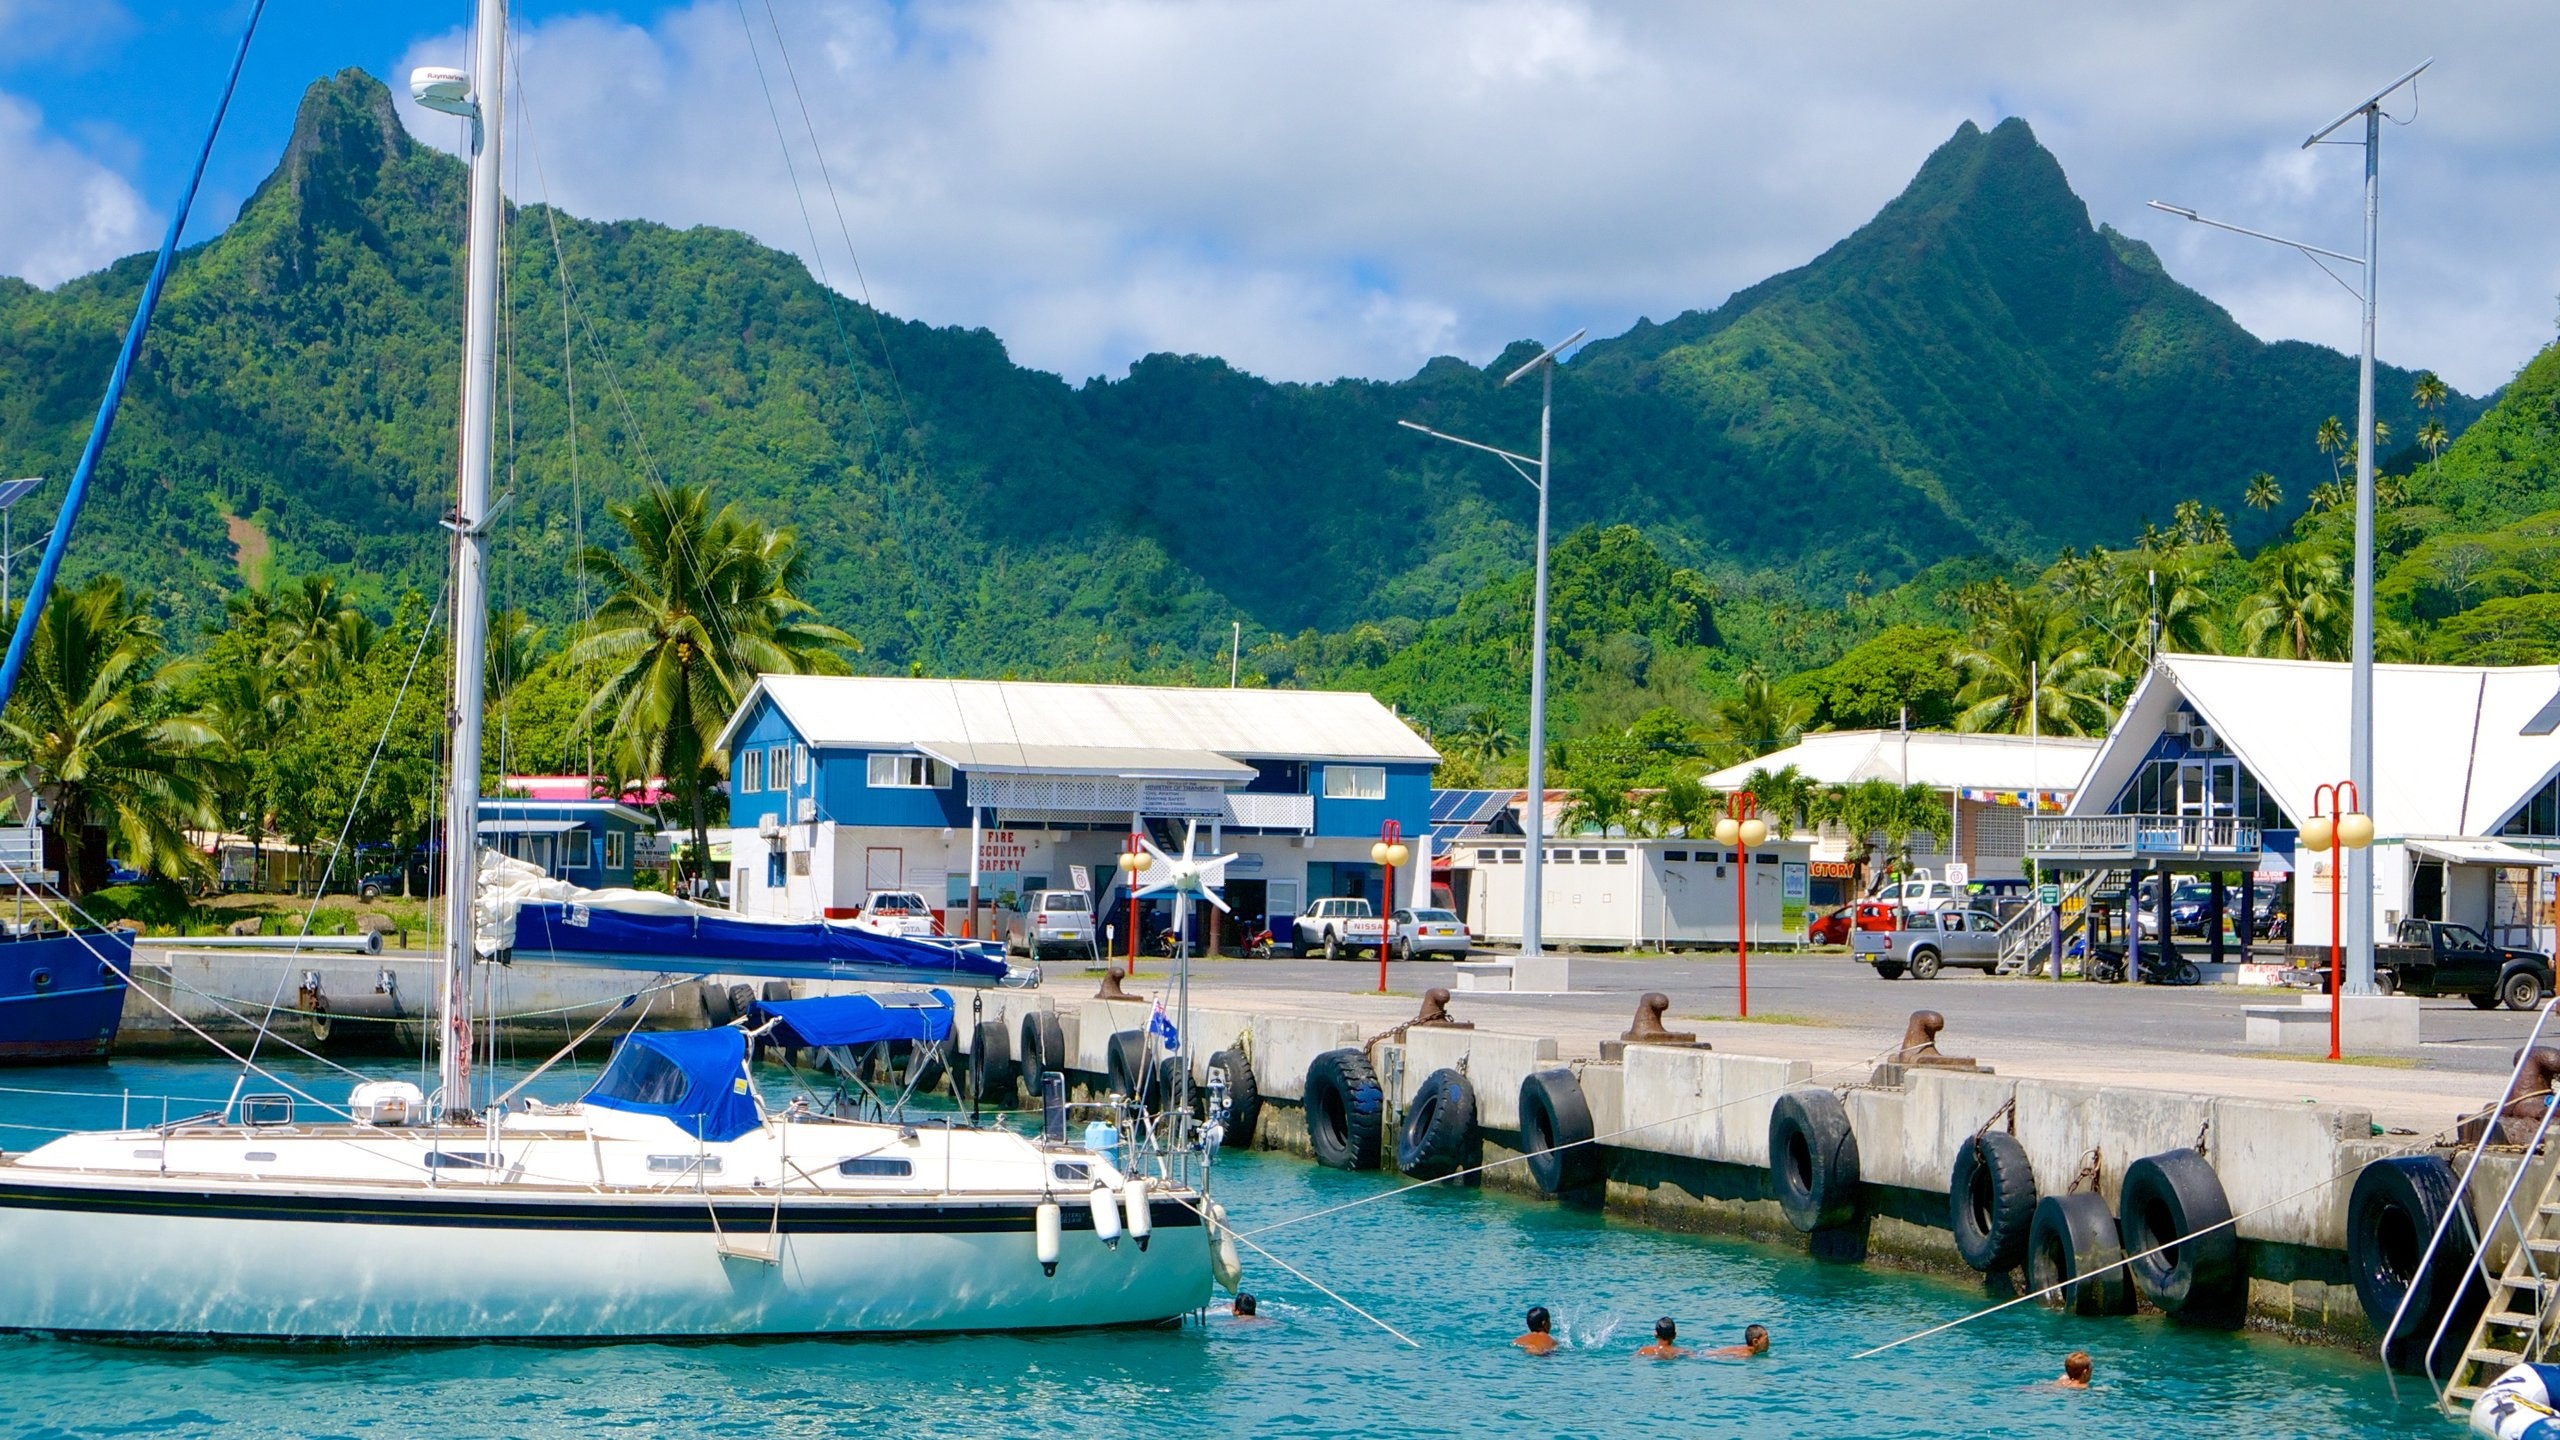 Avarua, Cook Islands, Vacation rentals, House rentals, 2560x1440 HD Desktop